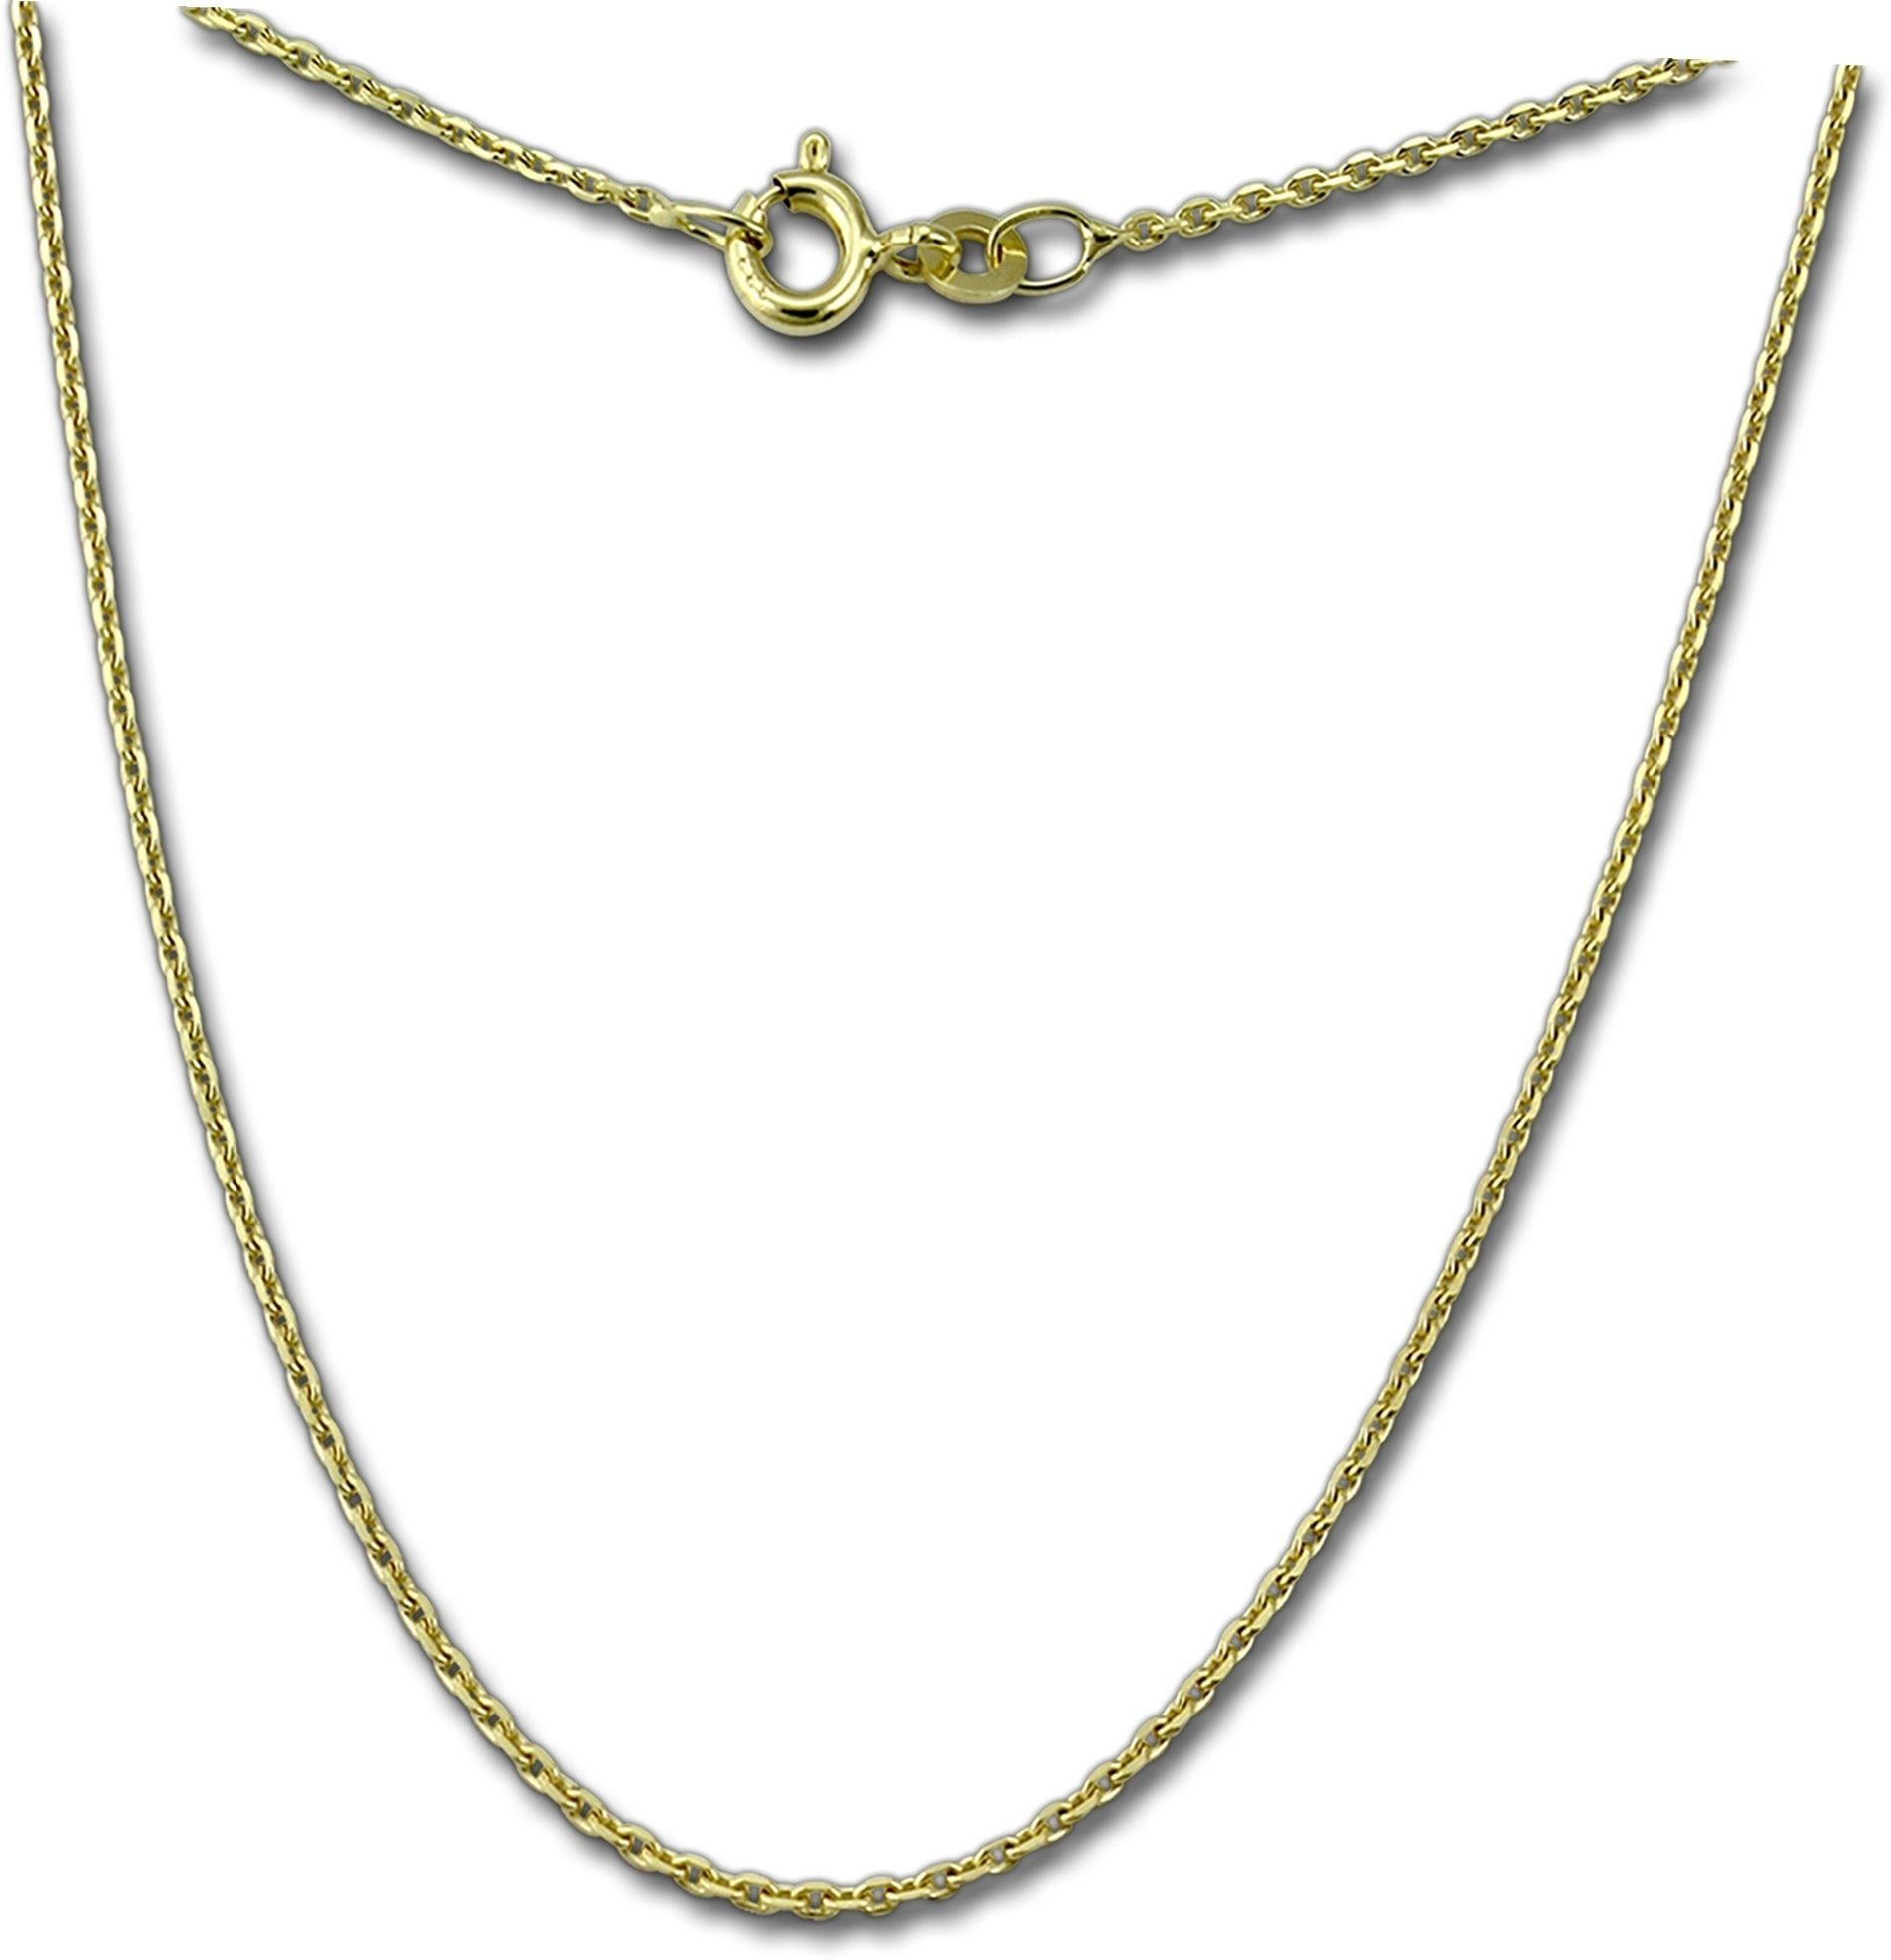 GoldDream Goldkette GoldDream Collier Halskette 333Gold (Collier), Damen Colliers Halskette 42cm, 333 Gelbgold - 8 Karat Echtgold, 333er